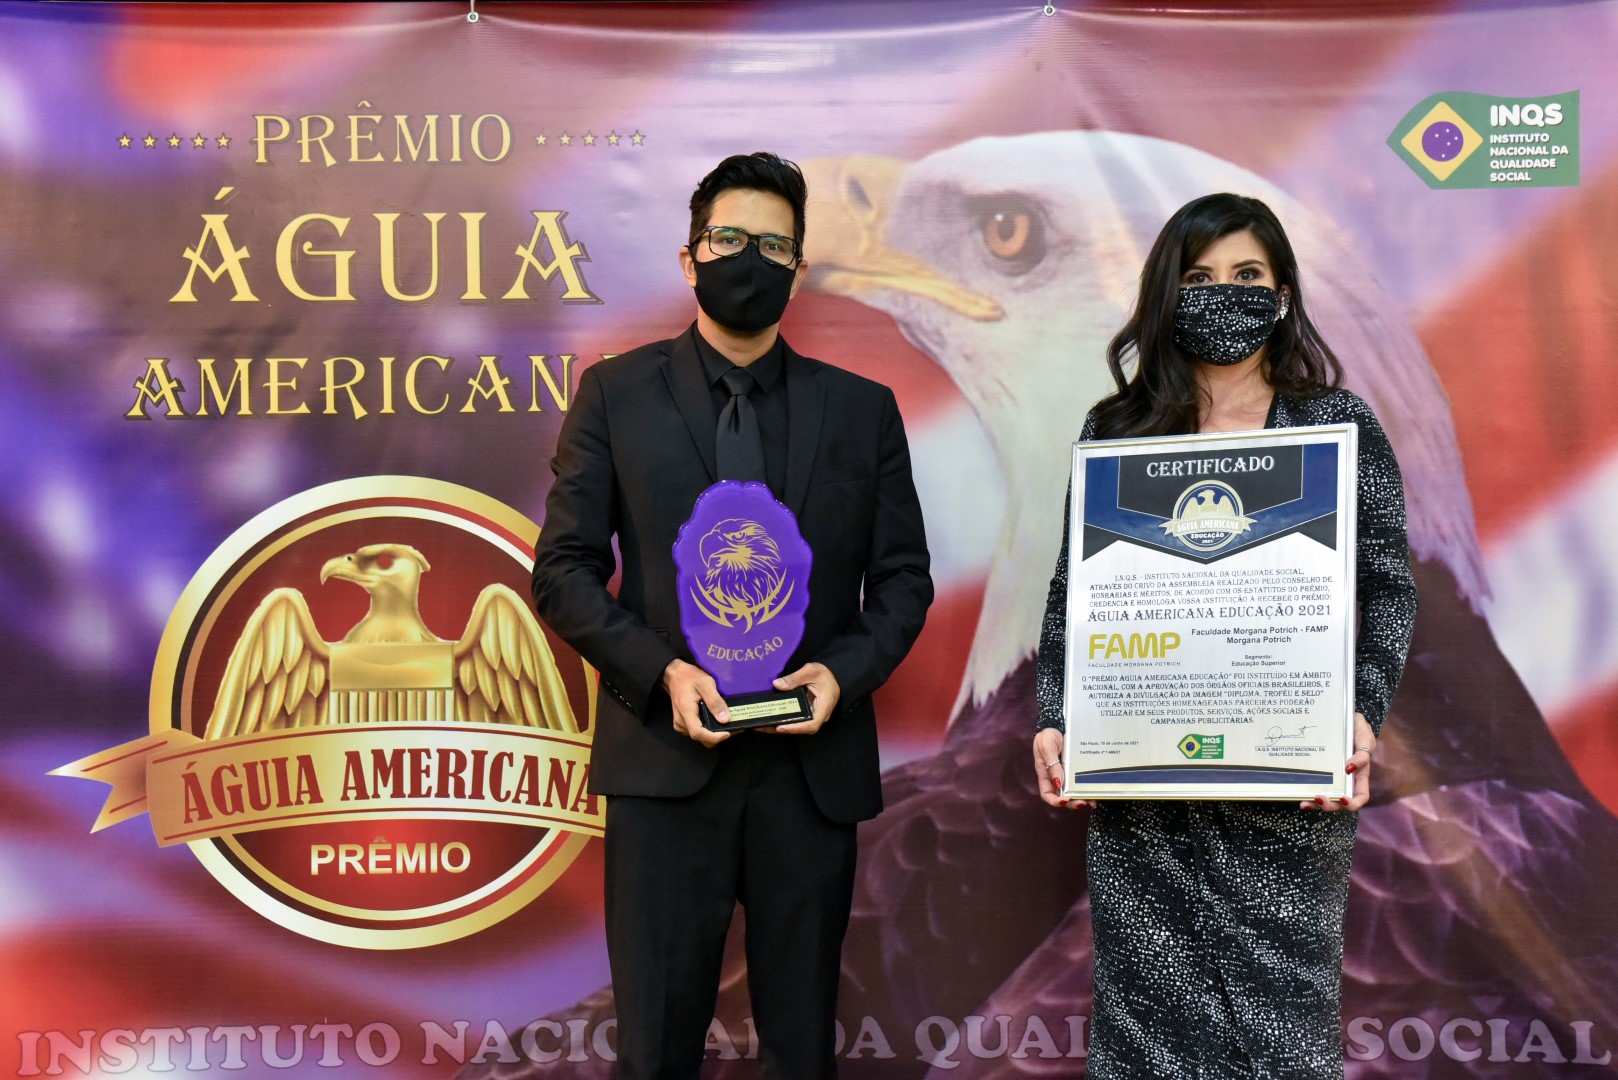 Prêmio Águia Americana Educacao Melhores do ano 20202021 - Faculdade FAMP.